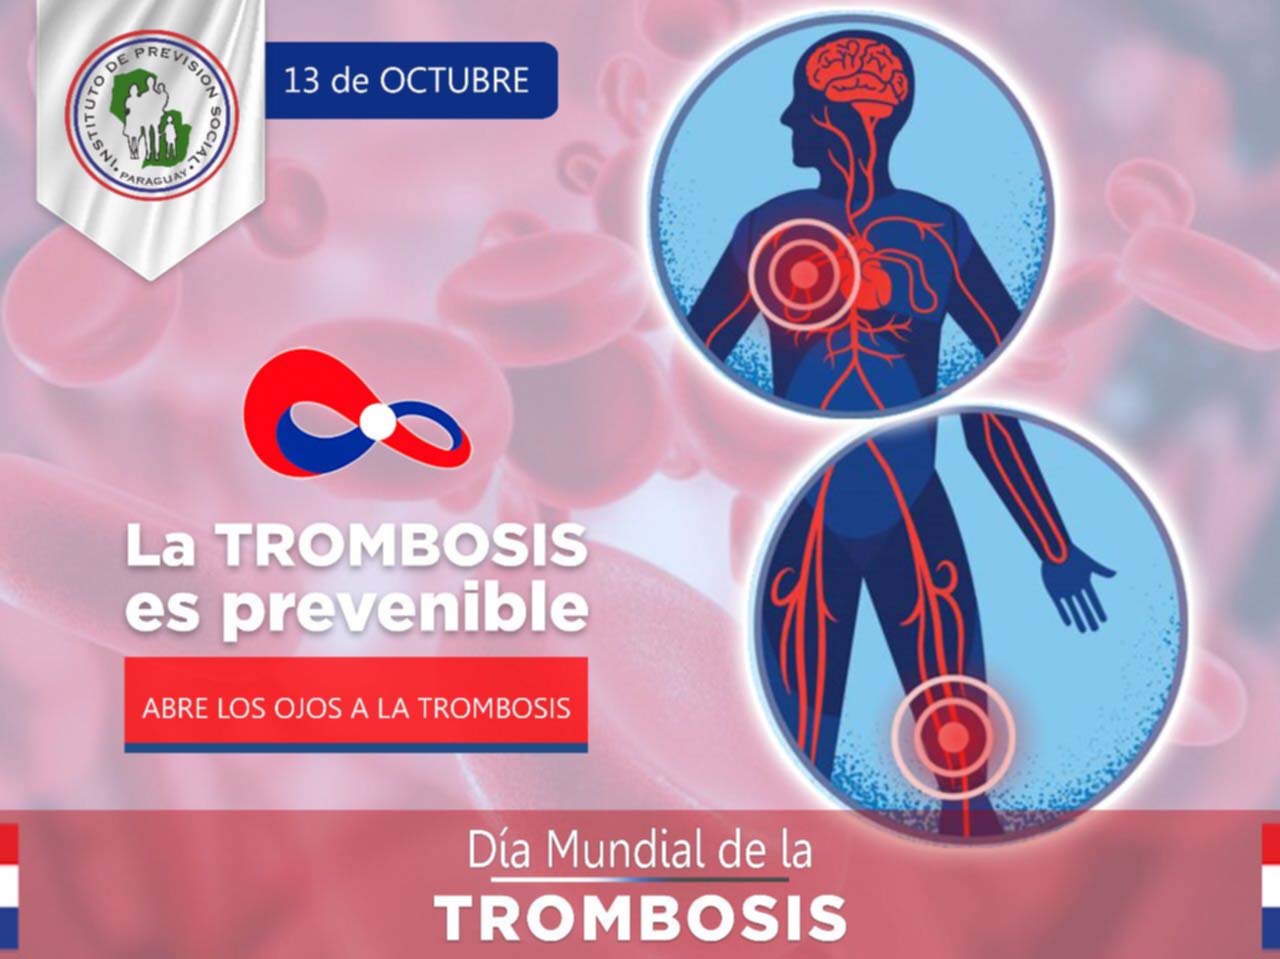 “Día Mundial de la Trombosis”: la trombosis es prevenible, conoce un poco sobre esta enfermedad